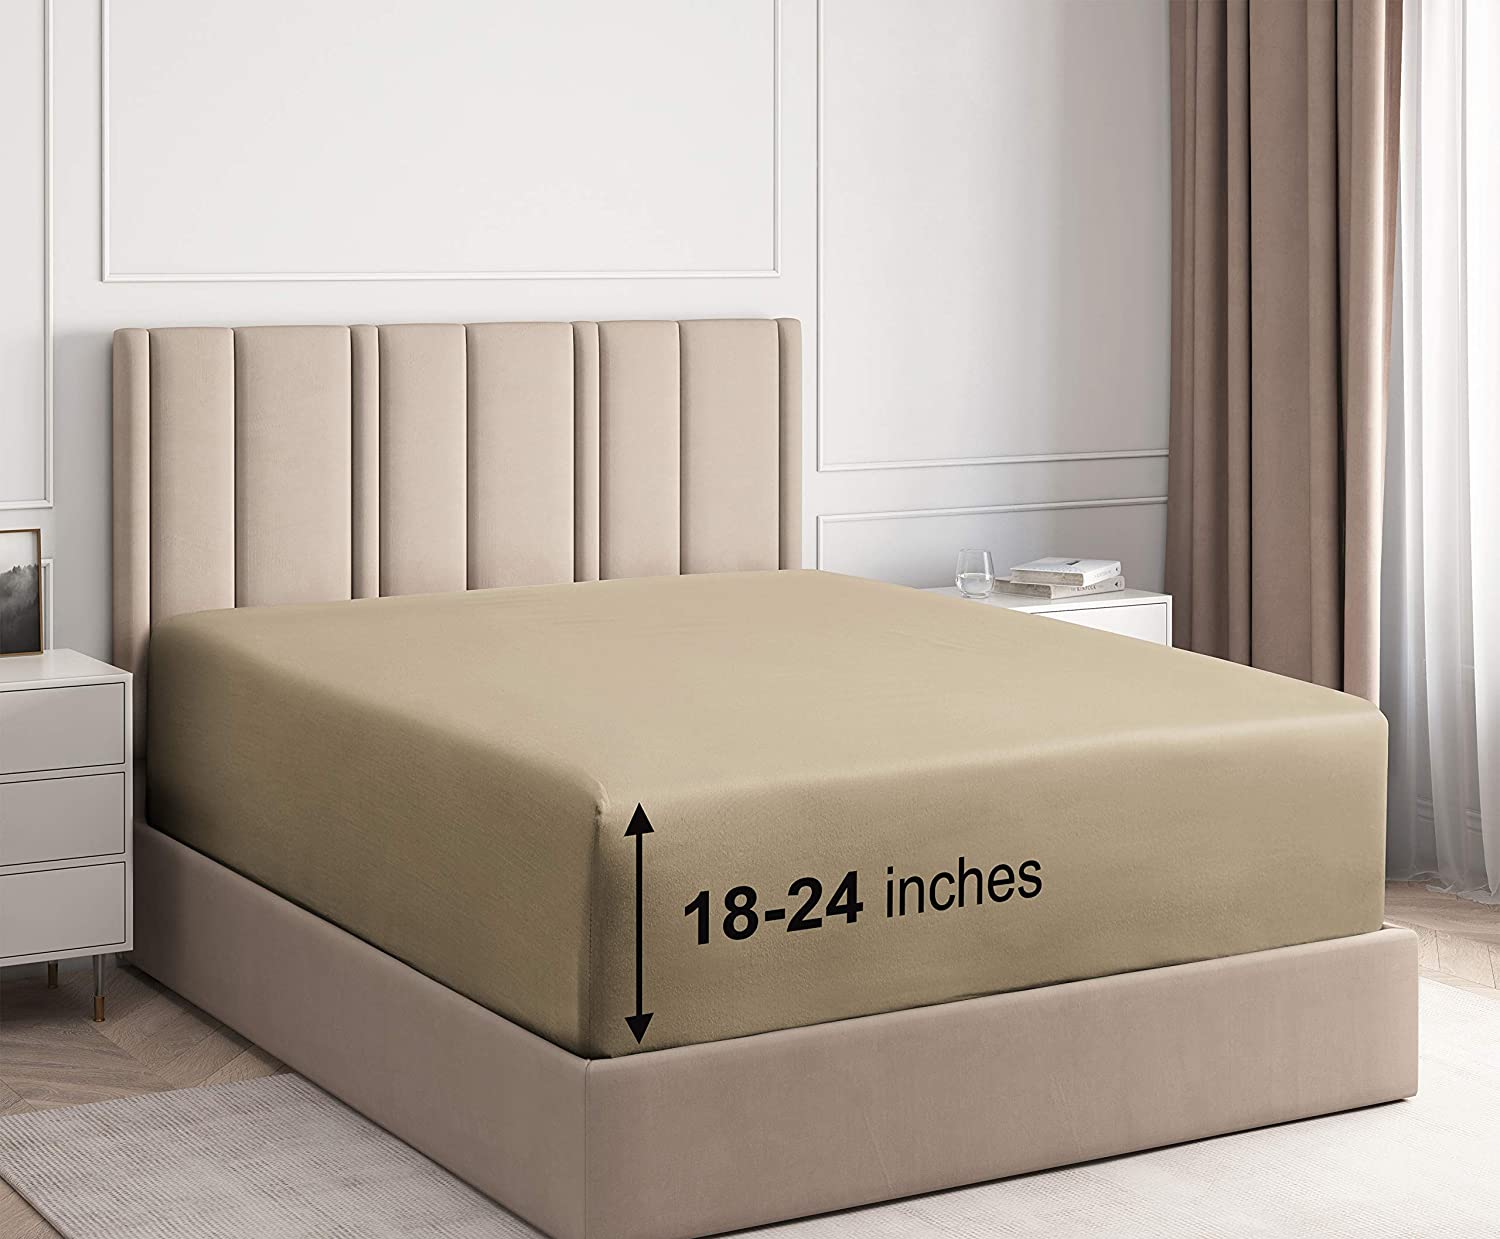 fitted sheet air mattress